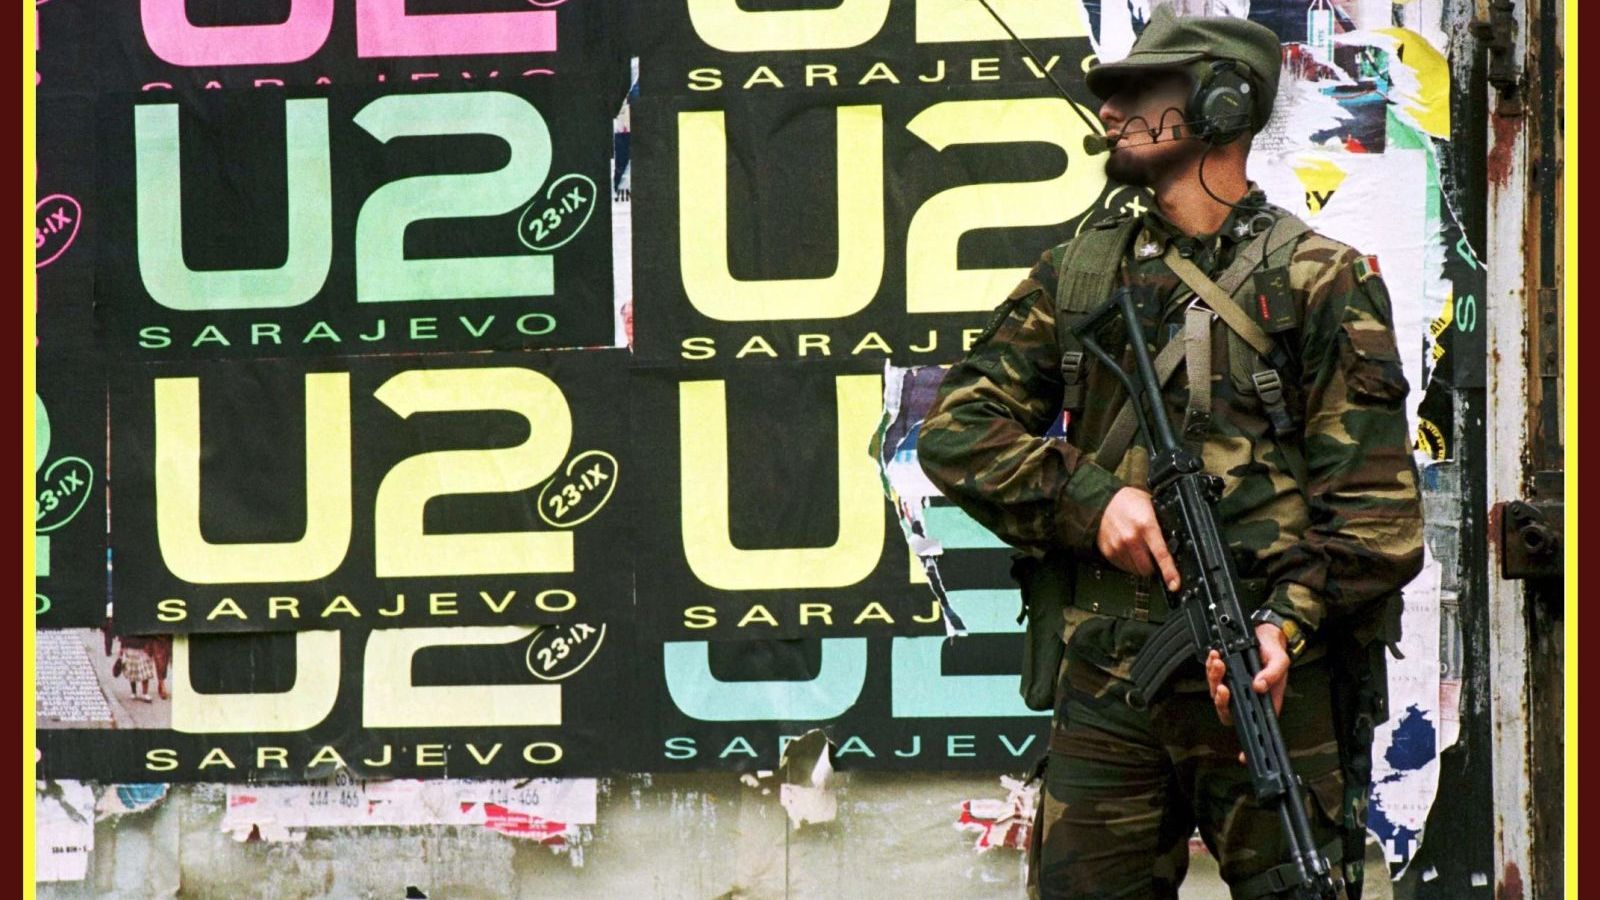 Kiss The Future, la recensione: Sarajevo, gli U2 e la musica, uno scudo contro le forze oscure